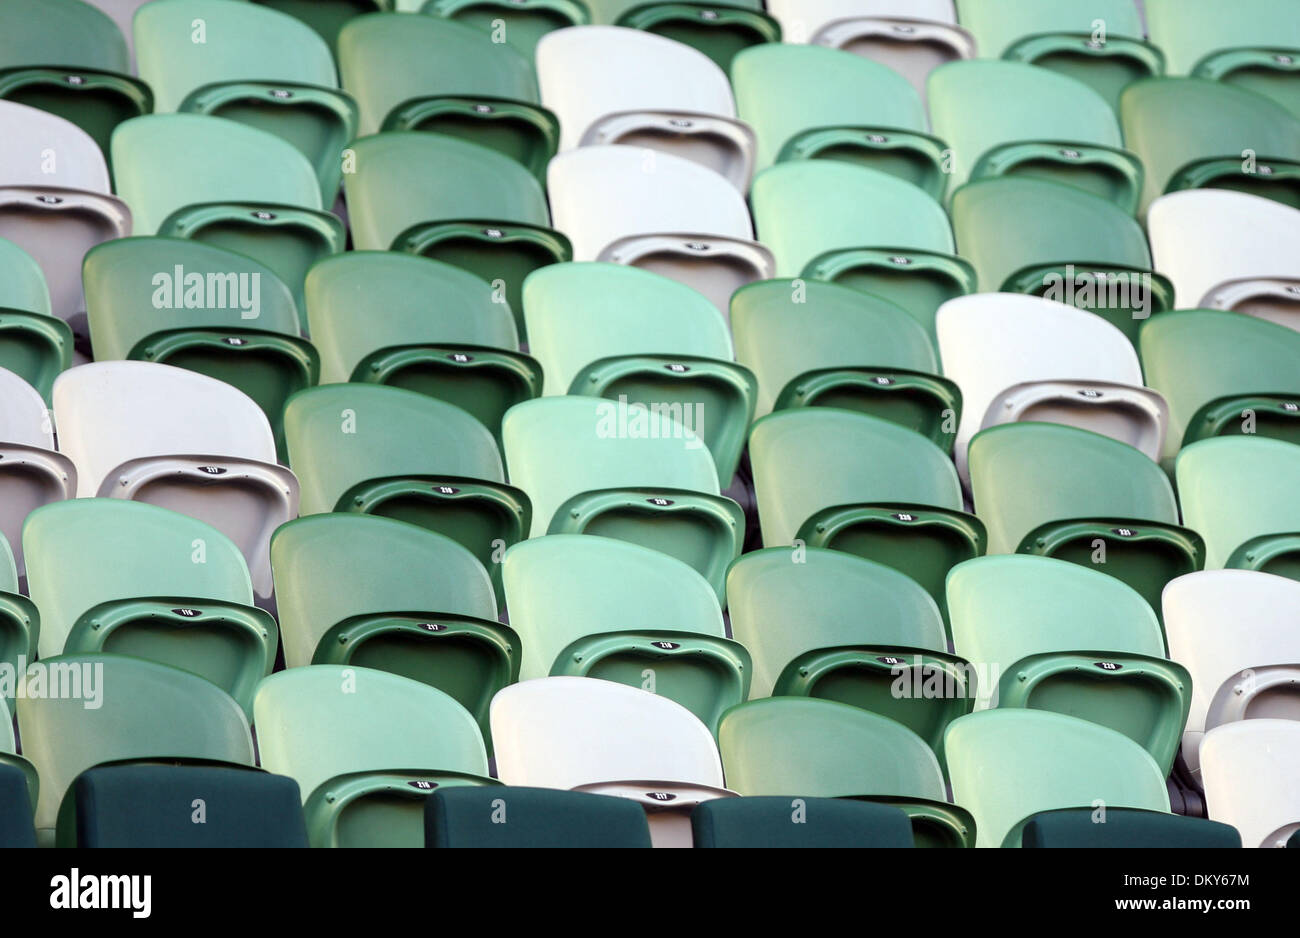 Jan 20, 2010 - Melbourne, Victoria, Australia - asientos del estadio vacío durante el Justine Henin (BEL) vs Elena Dementieva coinciden durante la ronda de una acción en el Abierto de Australia 2010. (Crédito de la Imagen: © MM Images/ZUMA Press) Foto de stock